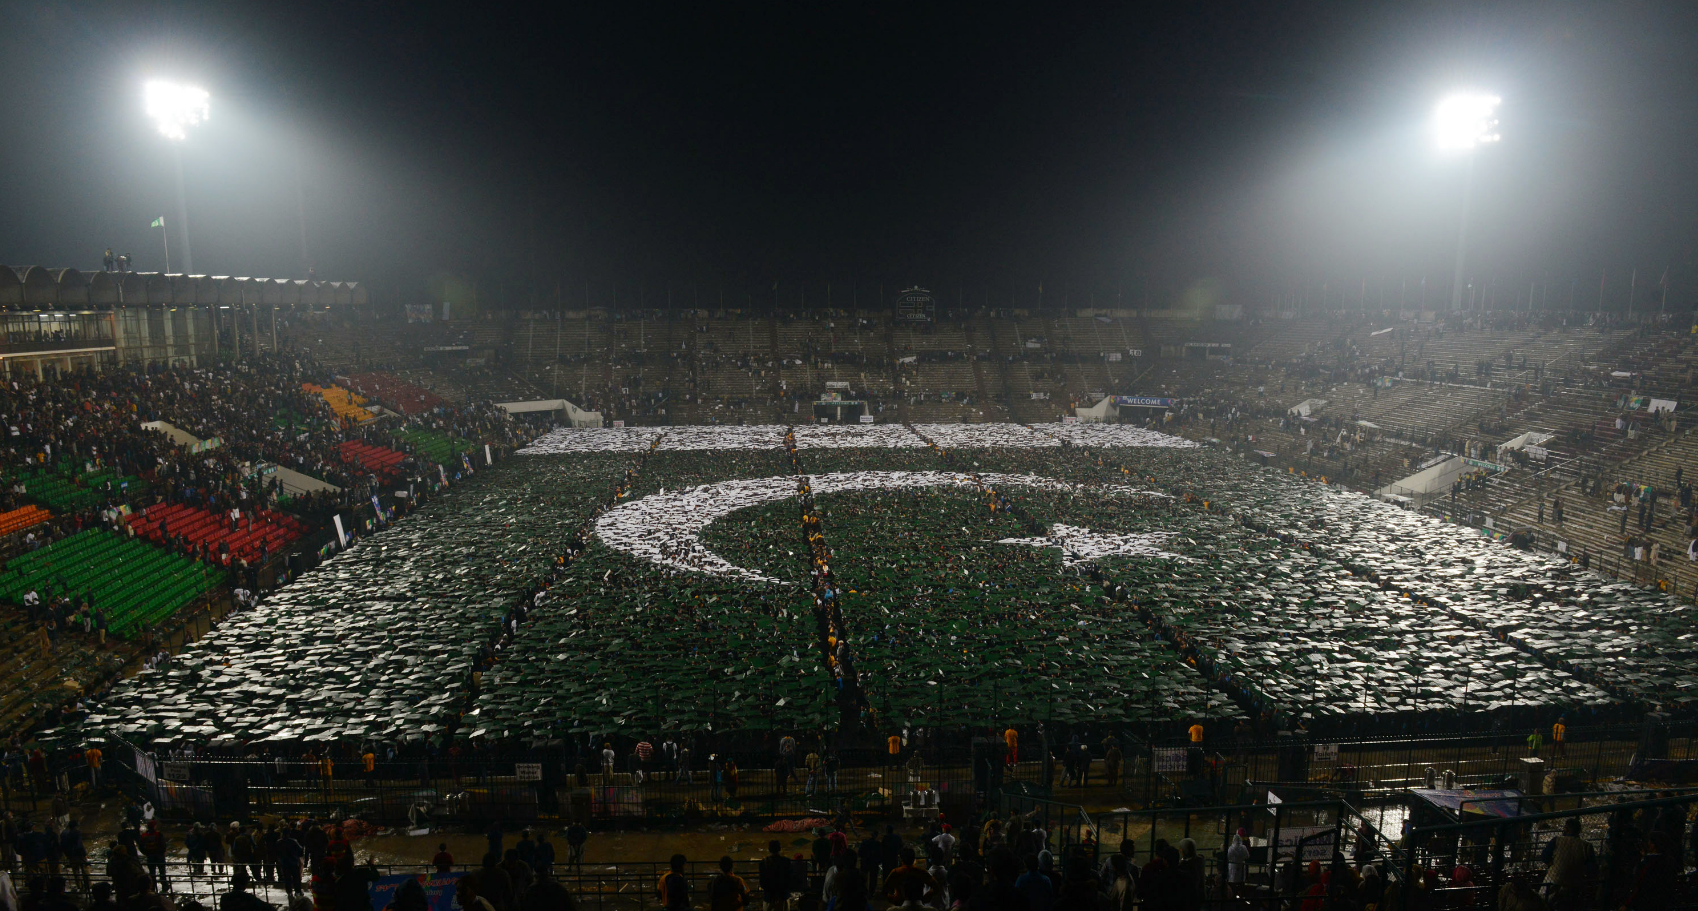 В 2014 году пакистанская молодежь решила побить рекорд Гиннесса и создать самый большой в мире флаг из людей. По официальным данным, для этого было задействовано 28597 тысяч человек.